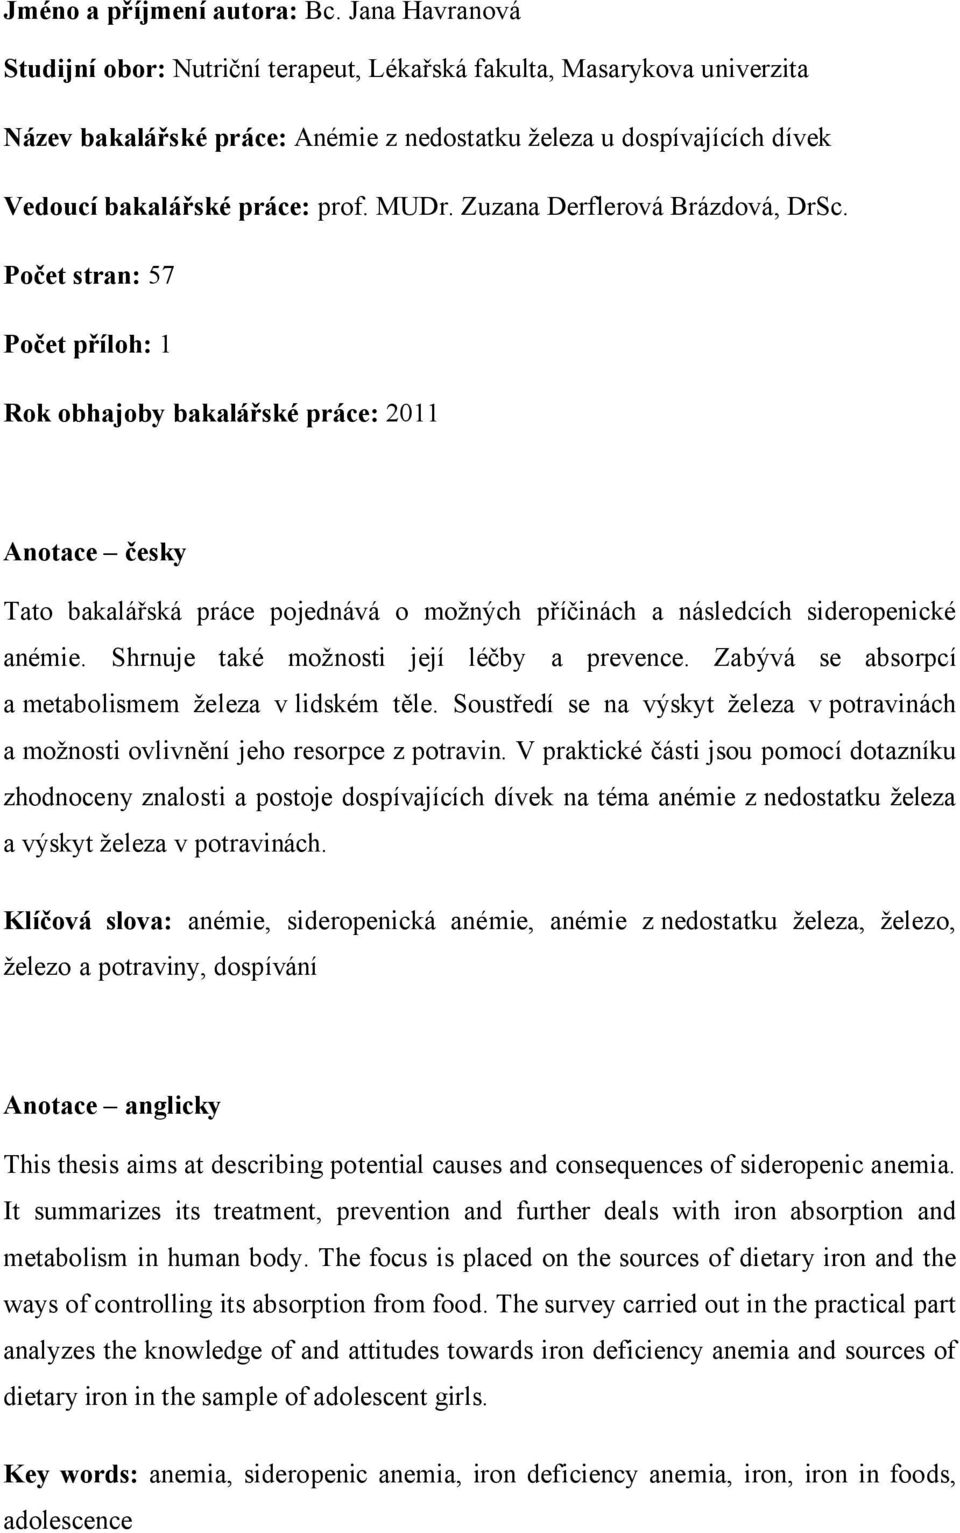 Lékařská fakulta BAKALÁŘSKÁ PRÁCE V OBORU NUTRIČNÍ TERAPEUT - PDF Free  Download